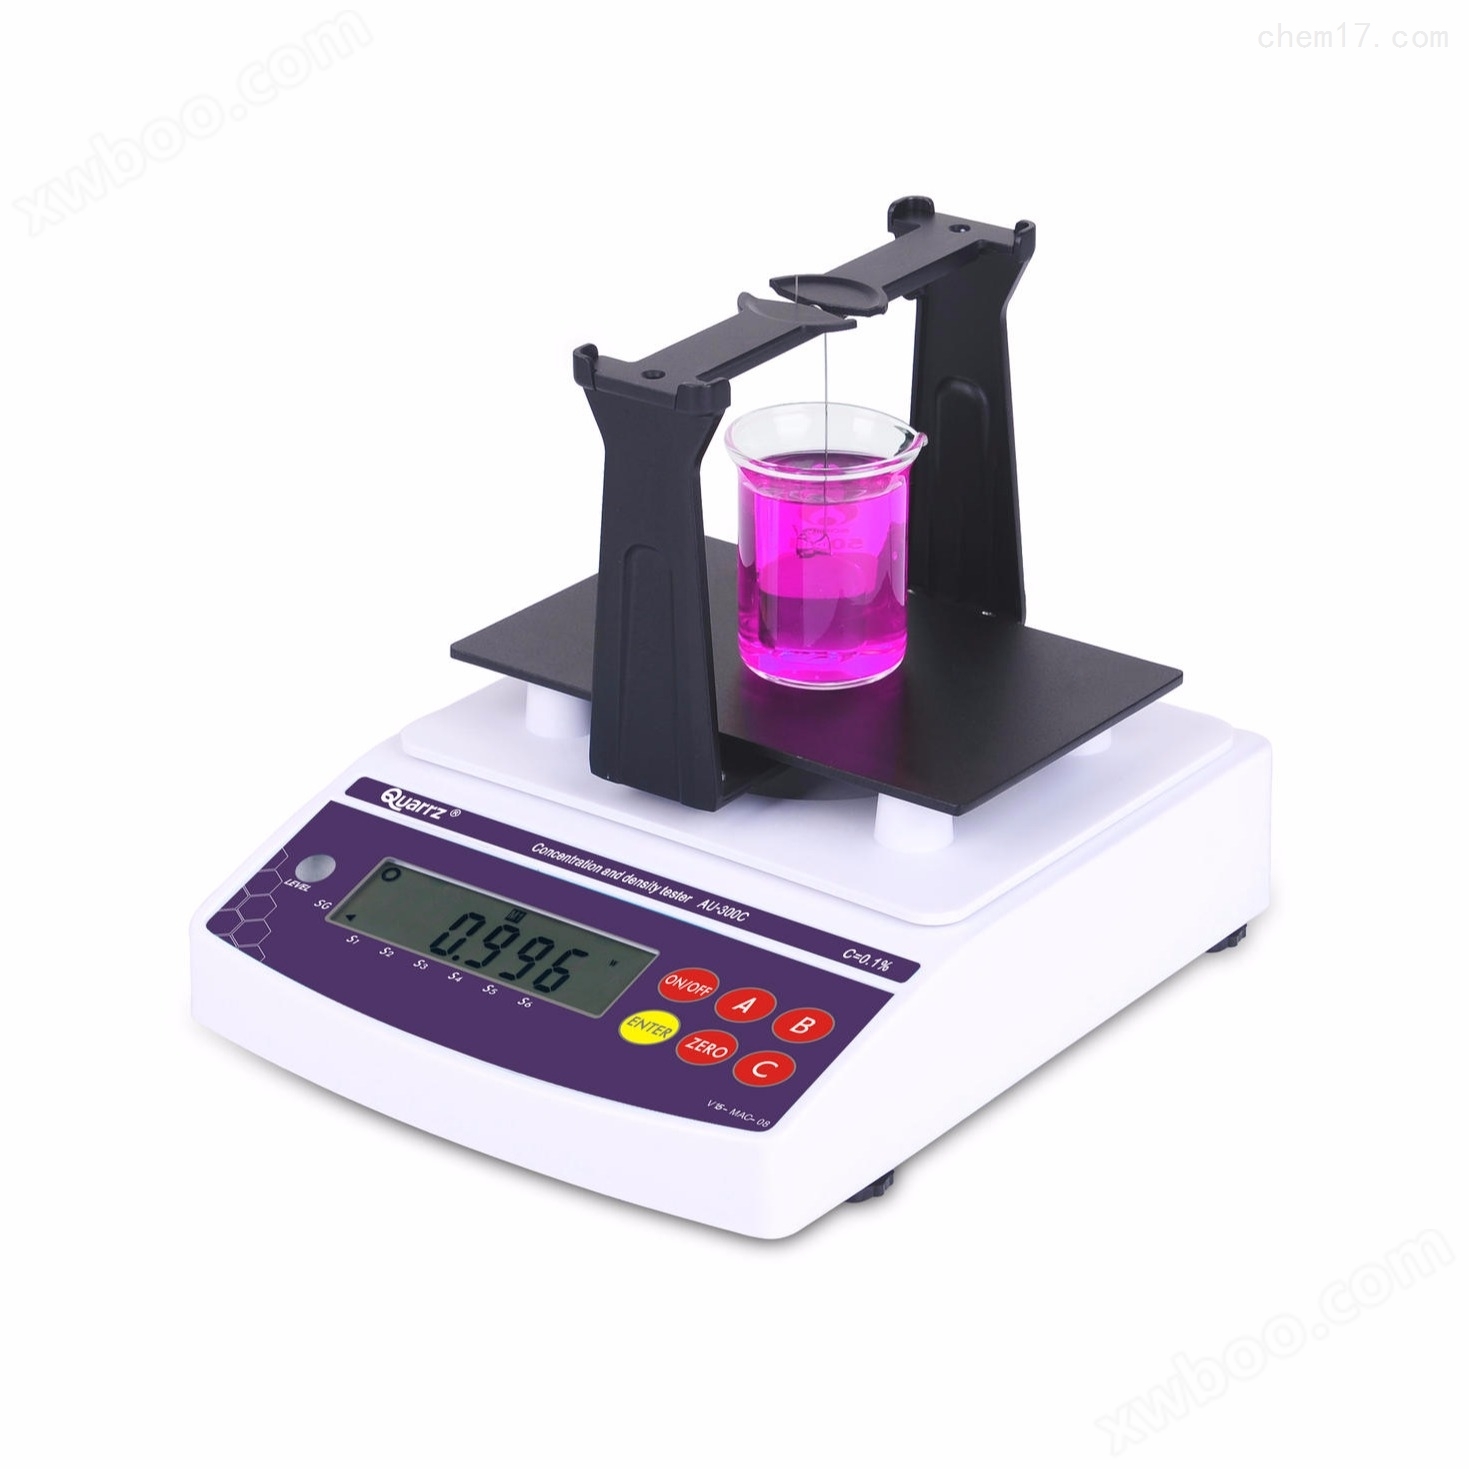 测量盐酸浓度的仪器